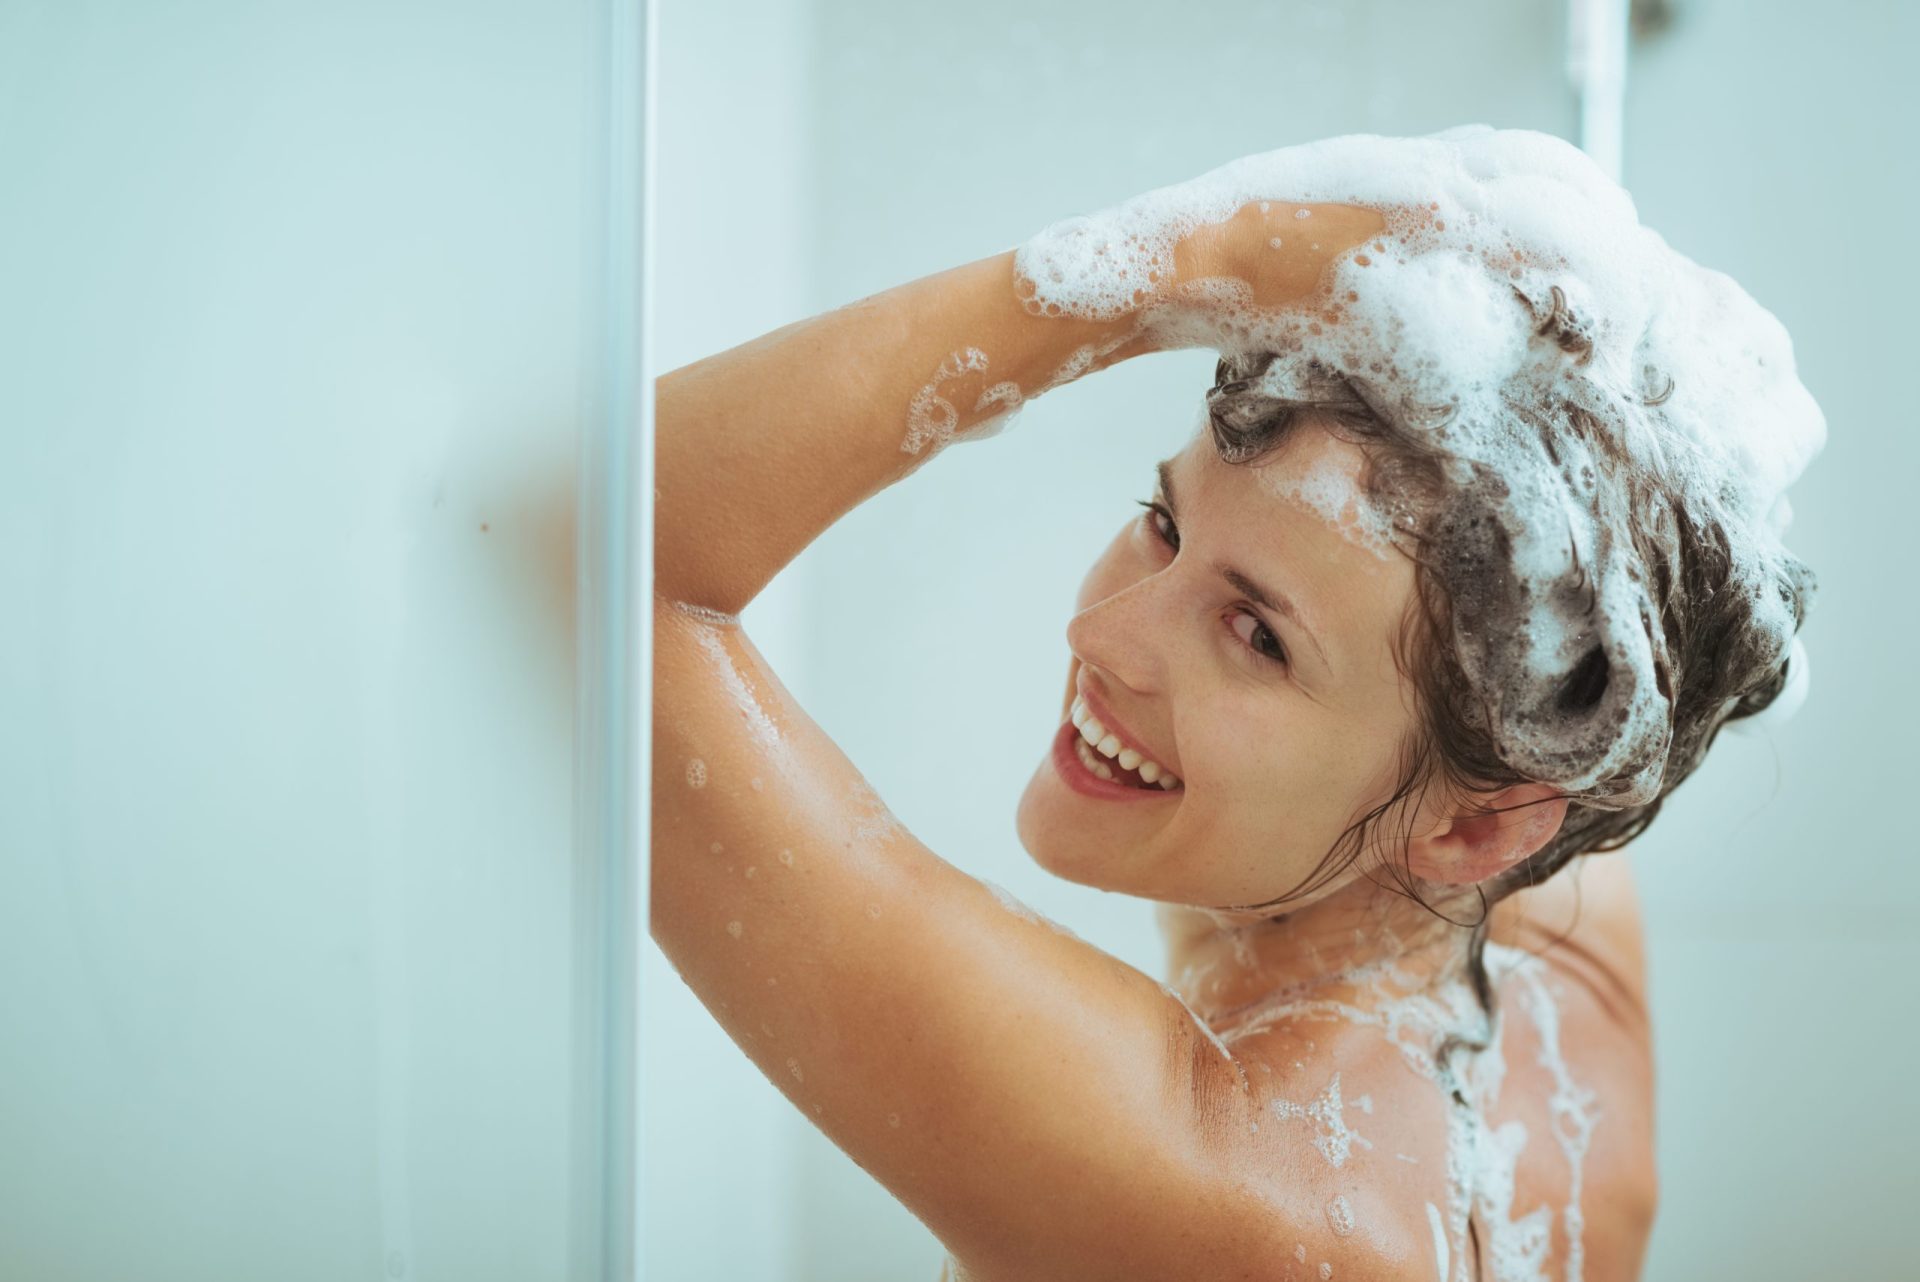 Quatro em cada 10 franceses admitem não tomar banho diariamente